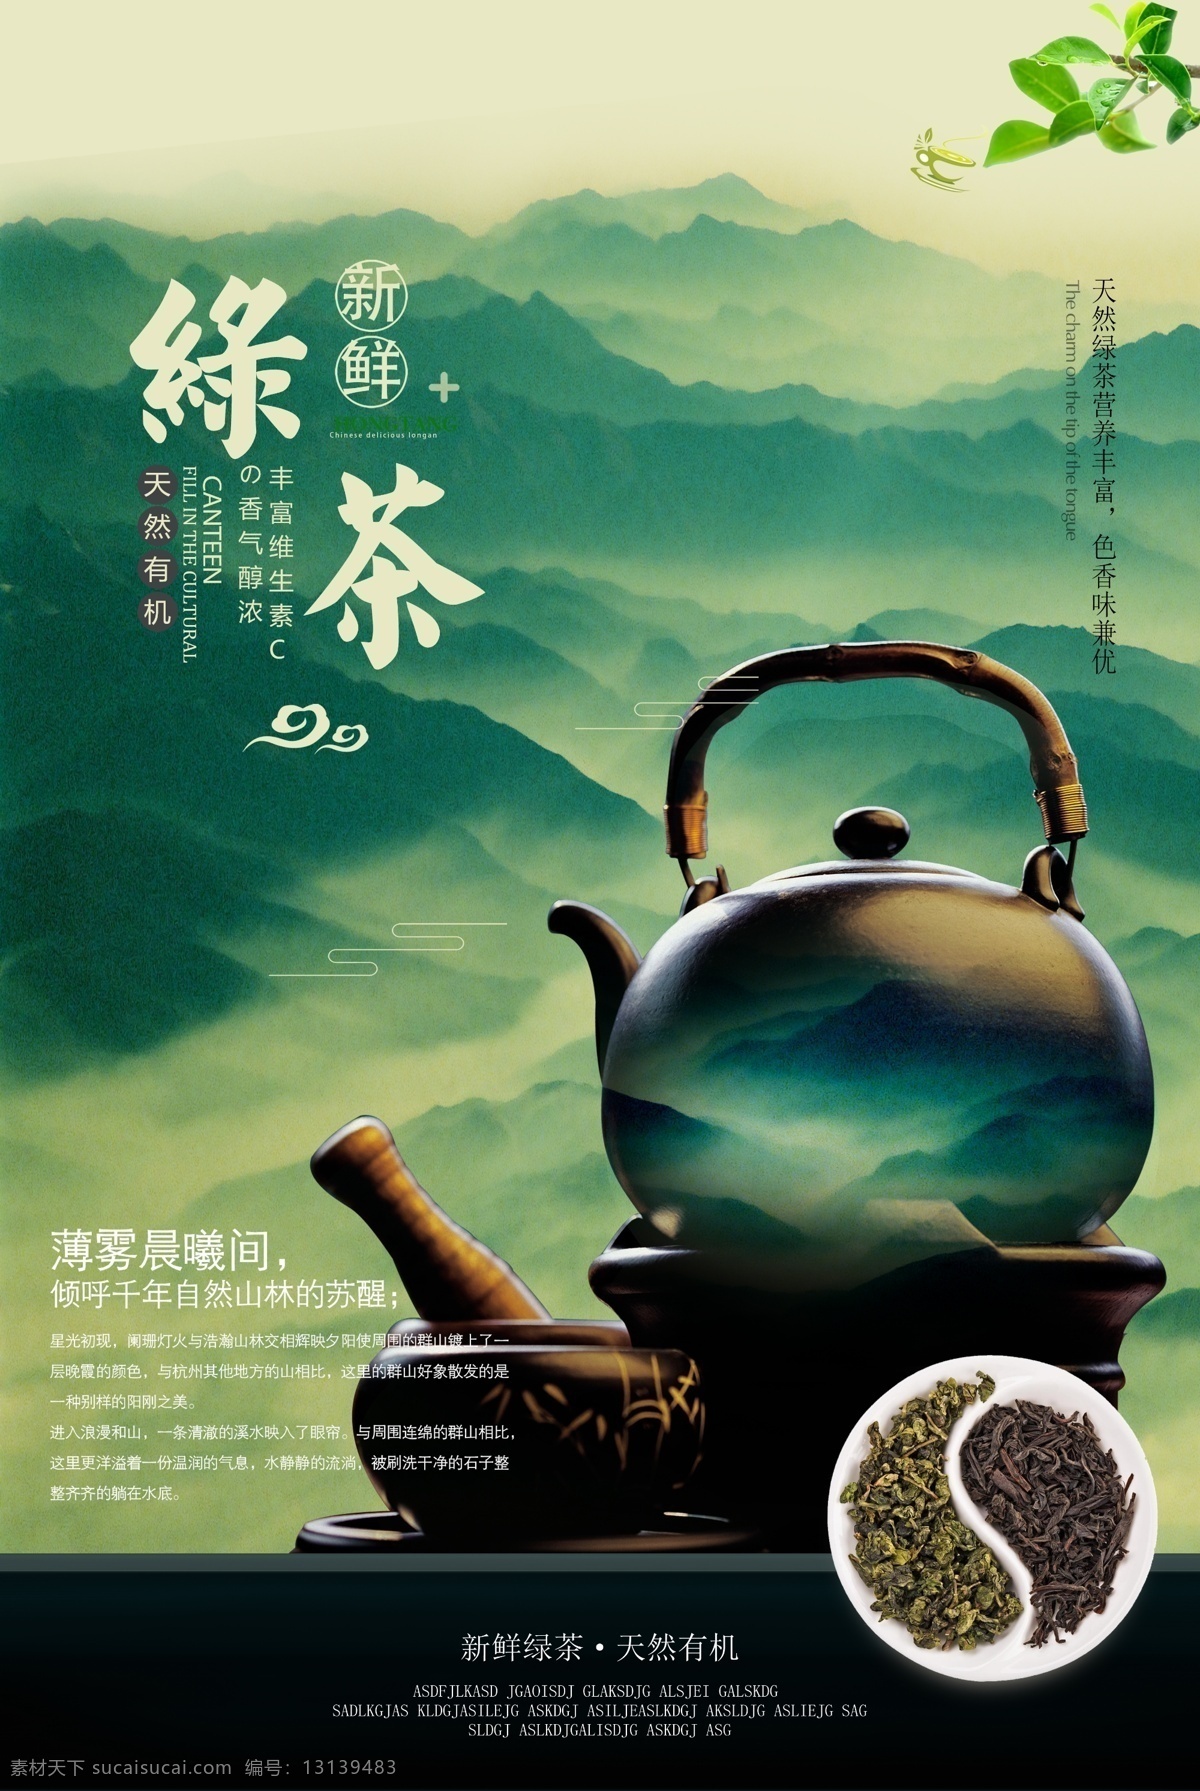 绿茶 茶叶 养生茶 茶壶 新茶上市 中国风